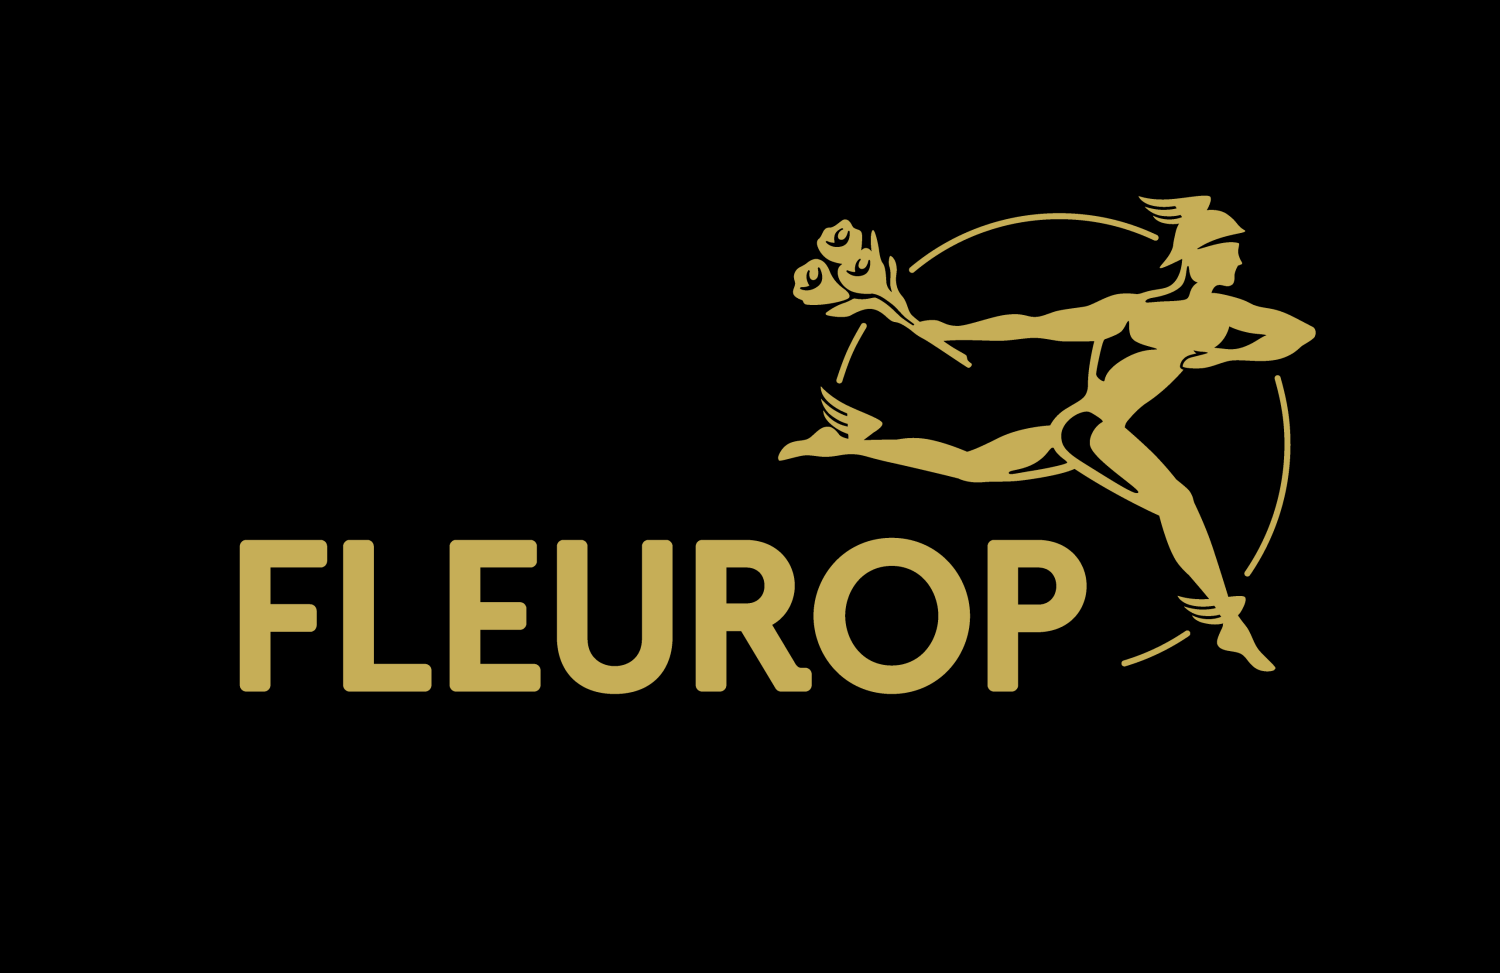 fleurop_logo_mitbildmarke_ohneclaim_deutschland_rgb_gold_zugeschnitten